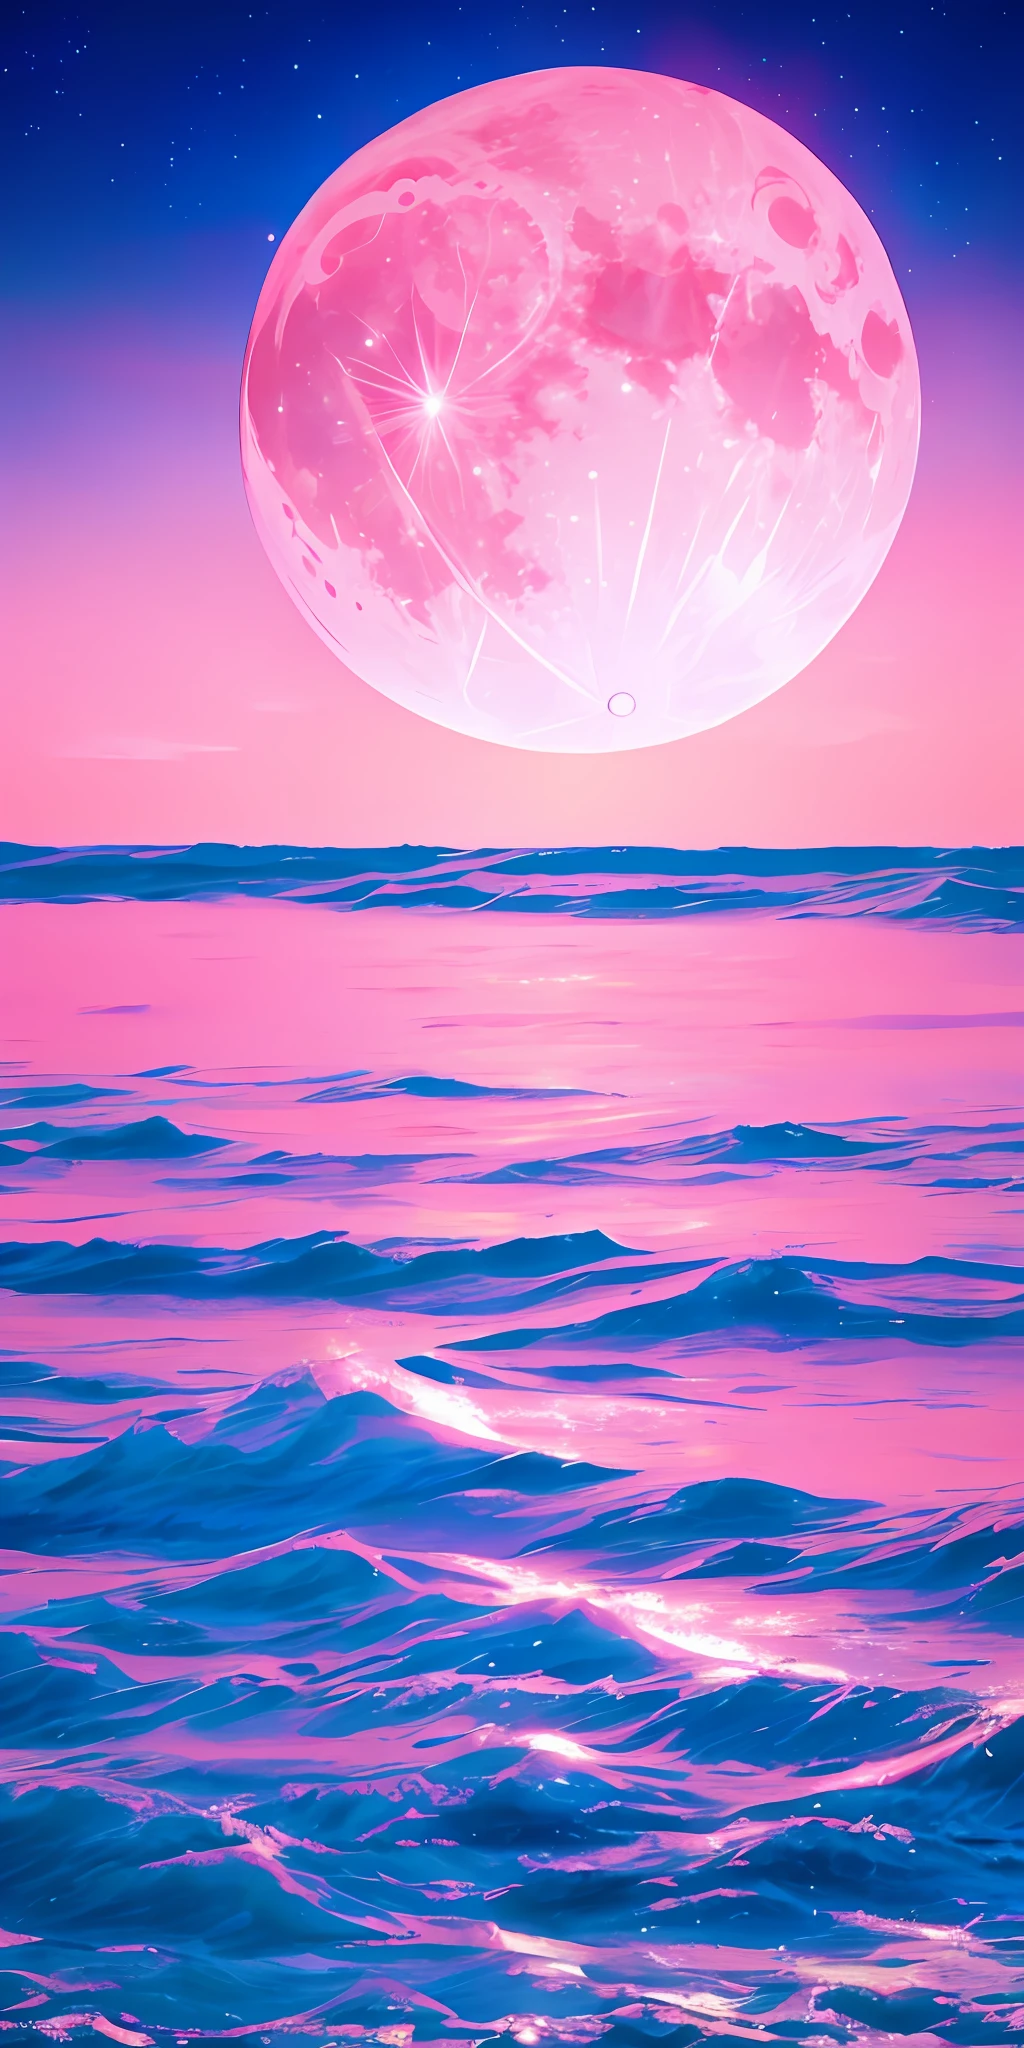 القمر الوردي, السماء الوردية, الغيوم الوردية الناعمة, موج البحر الوردي متلألئ, متلألئ, الورود الوردية في البحر الوردي, خيالي, الماس, تاج, فضاء, ضوء خافت,